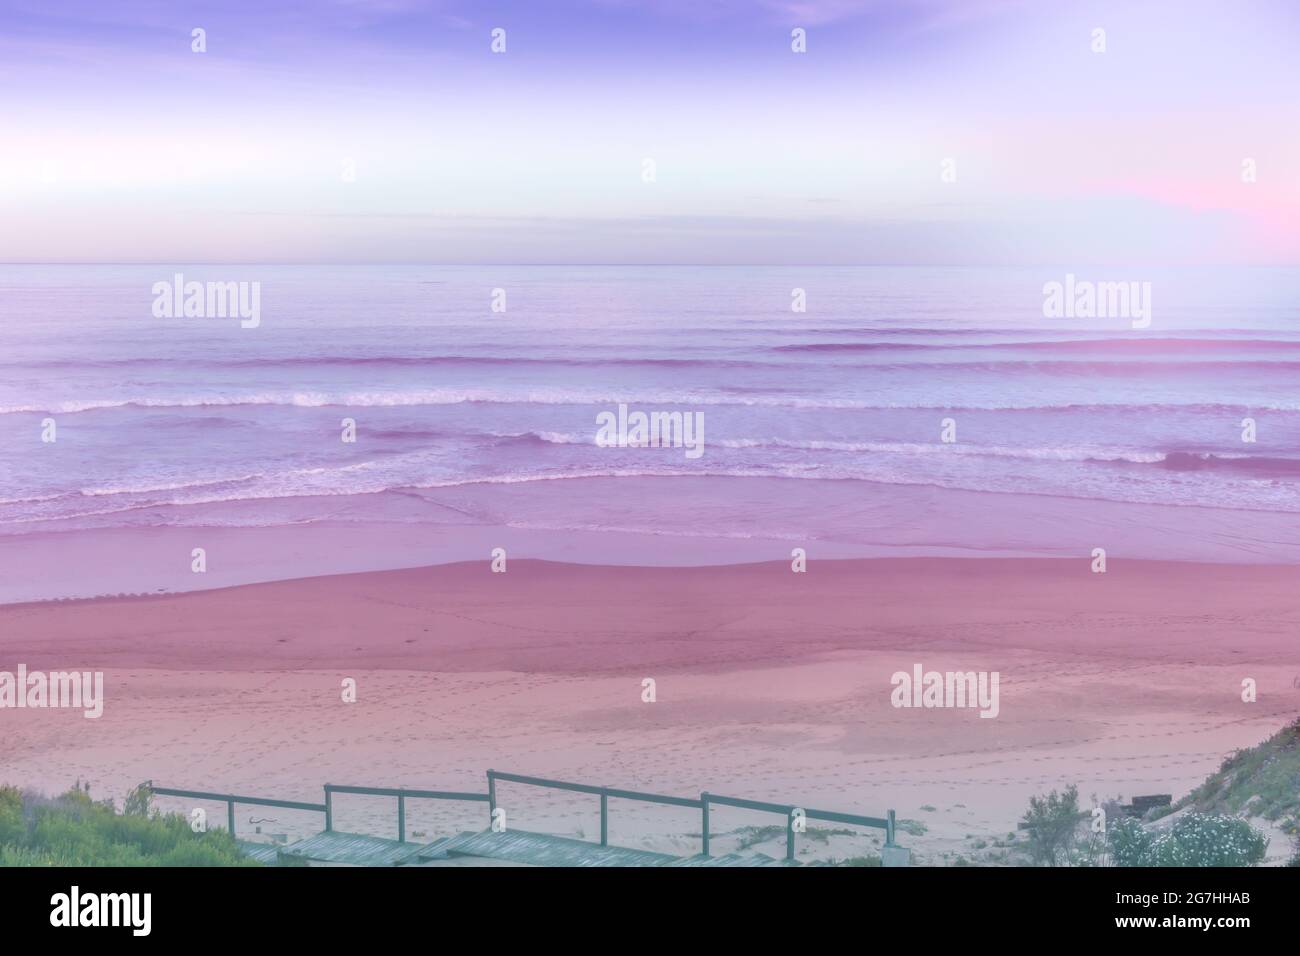 Abstraktes, weiches Rosa und Flieder am Strand - romantisches, weiches Foto mit Gehweg vor dem Hotel Stockfoto